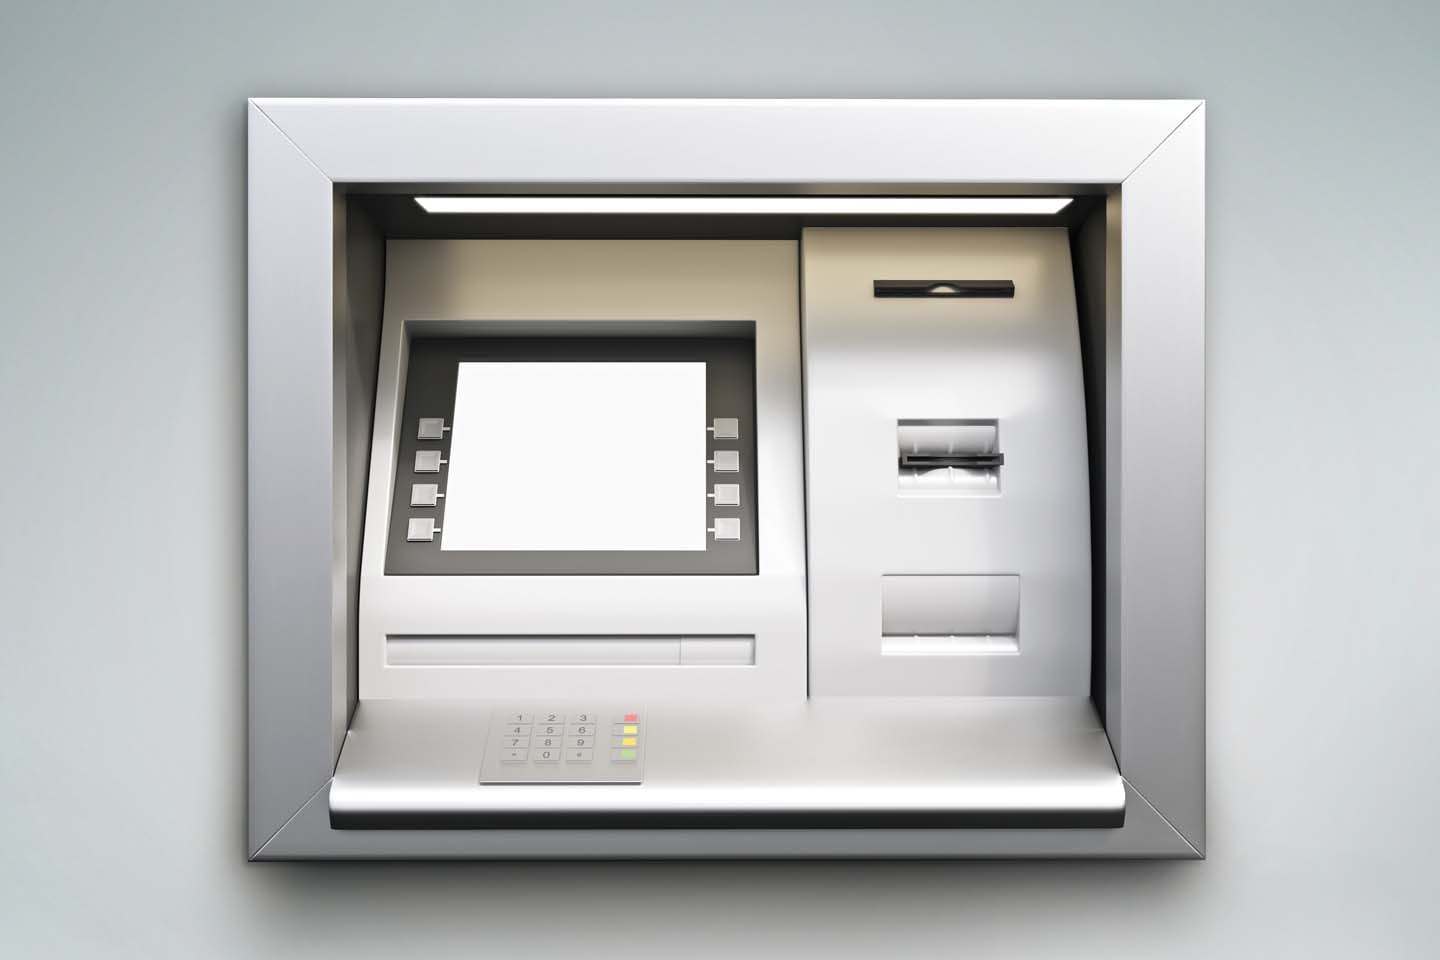 ATM kiosk chattanooga